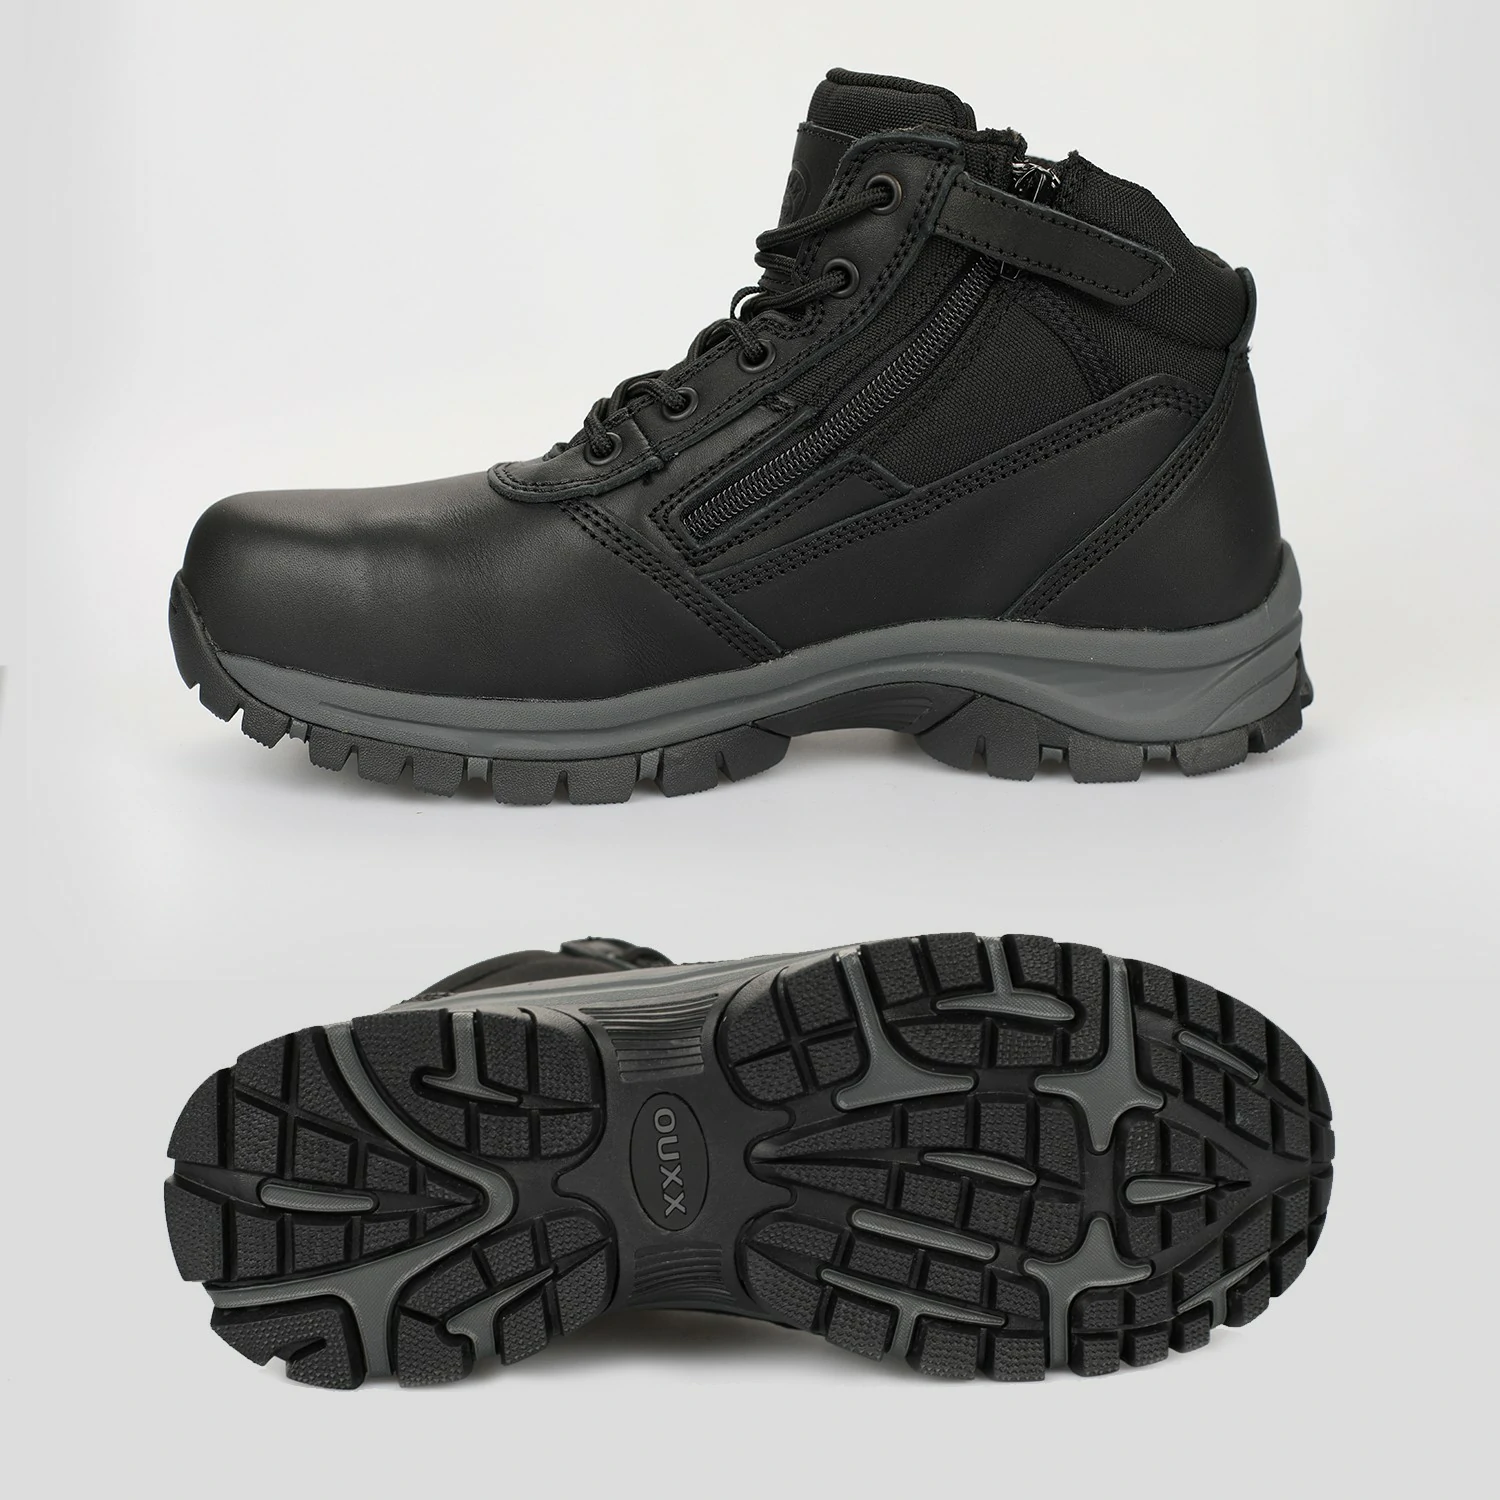 OX2518_www.ouxxsafety.com-3_Workboots_Workshoes_ouxxshoes_ouxxboots_non slip shoes_work boots for men